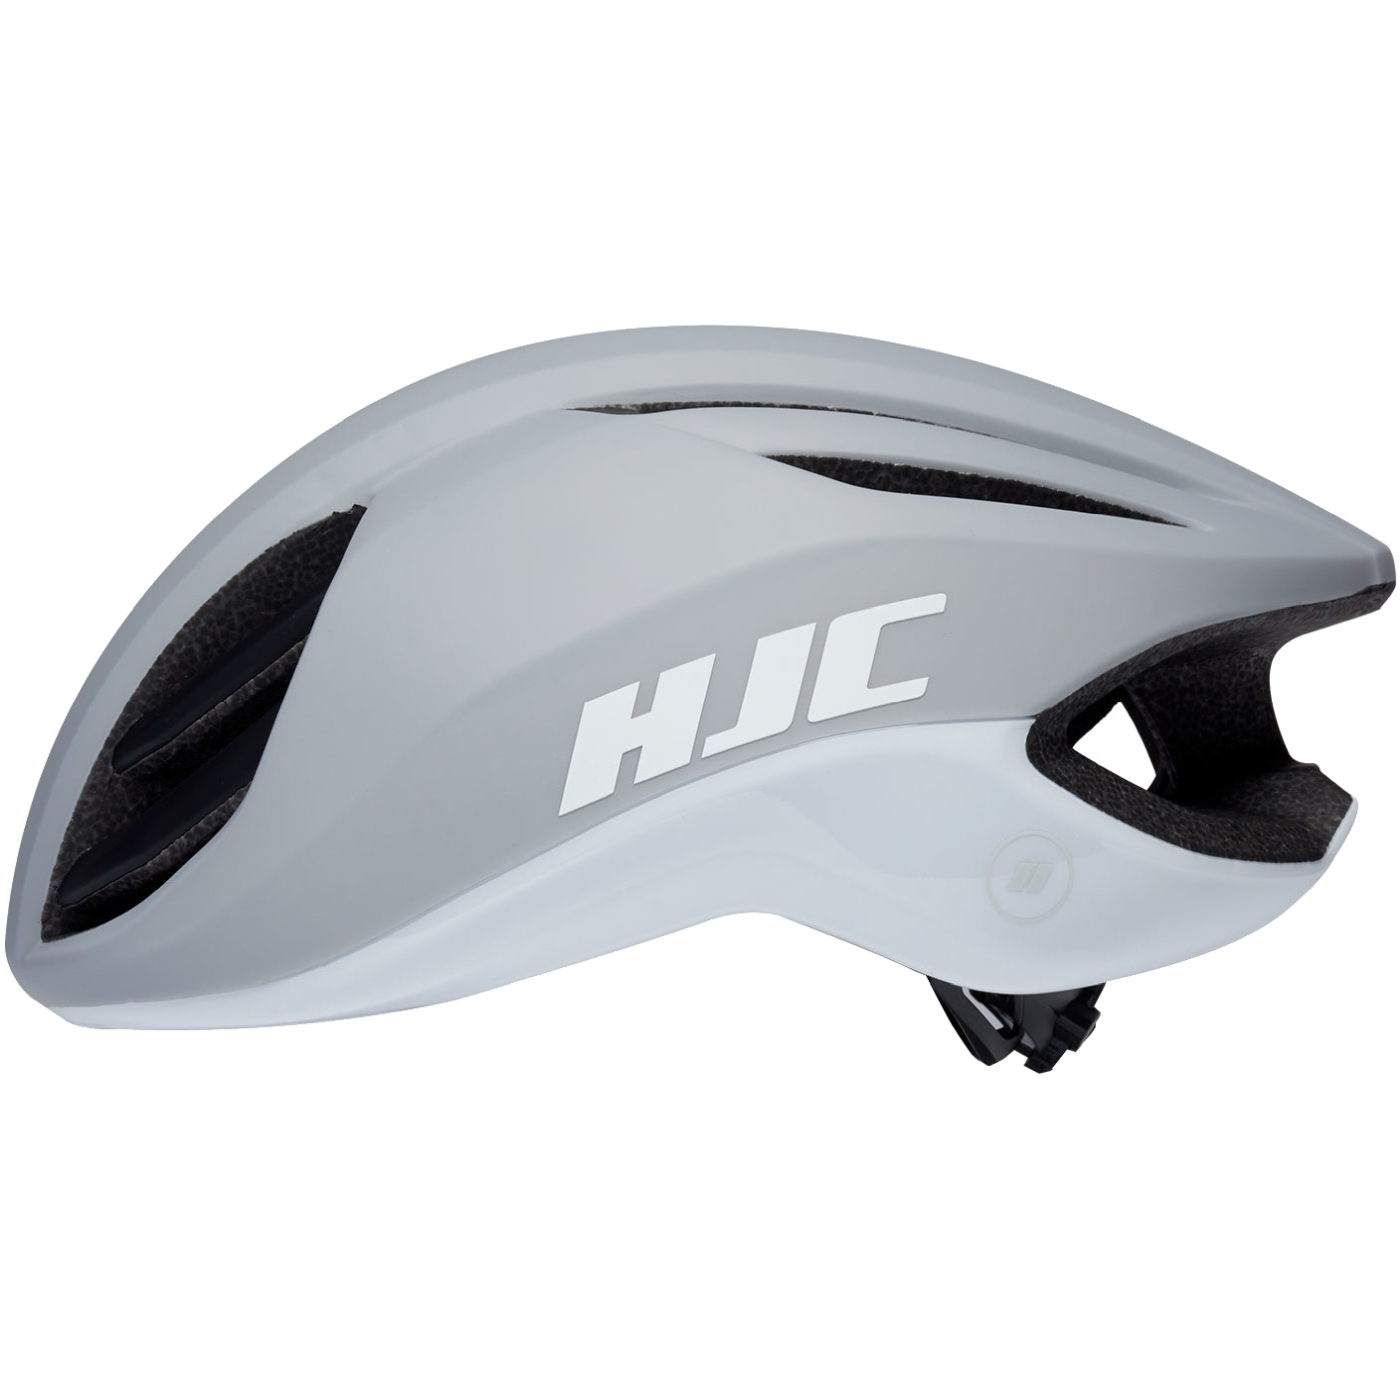 Produktbild von HJC Atara Fahrradhelm - matt gloss light grey